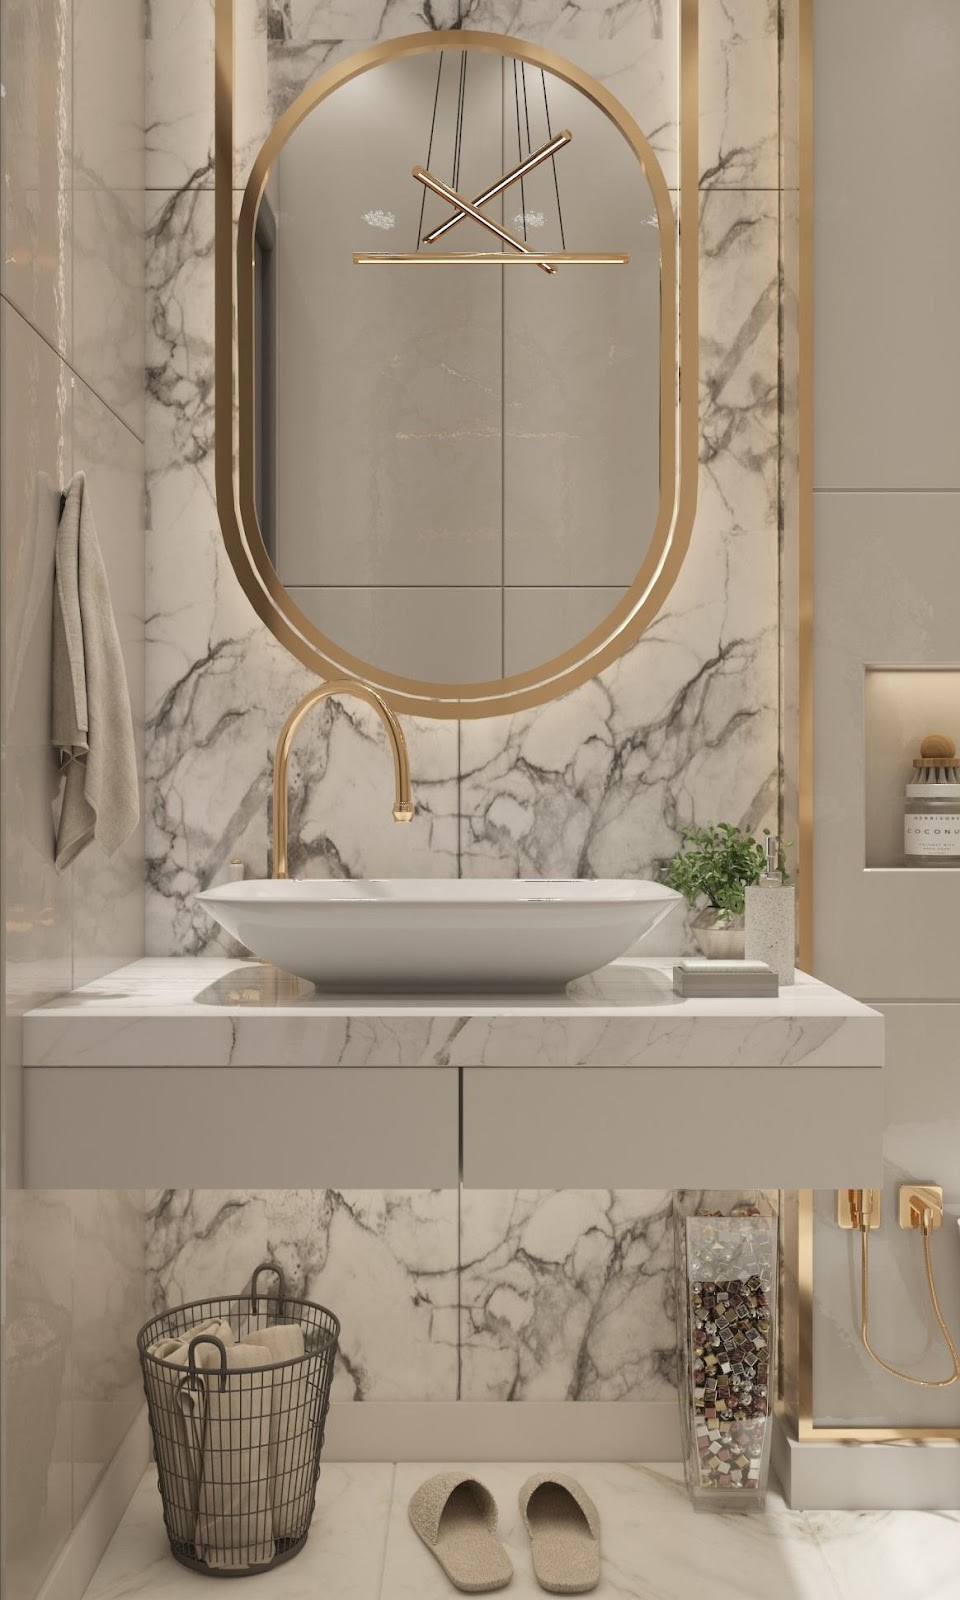 Luxury bathroom with golden details